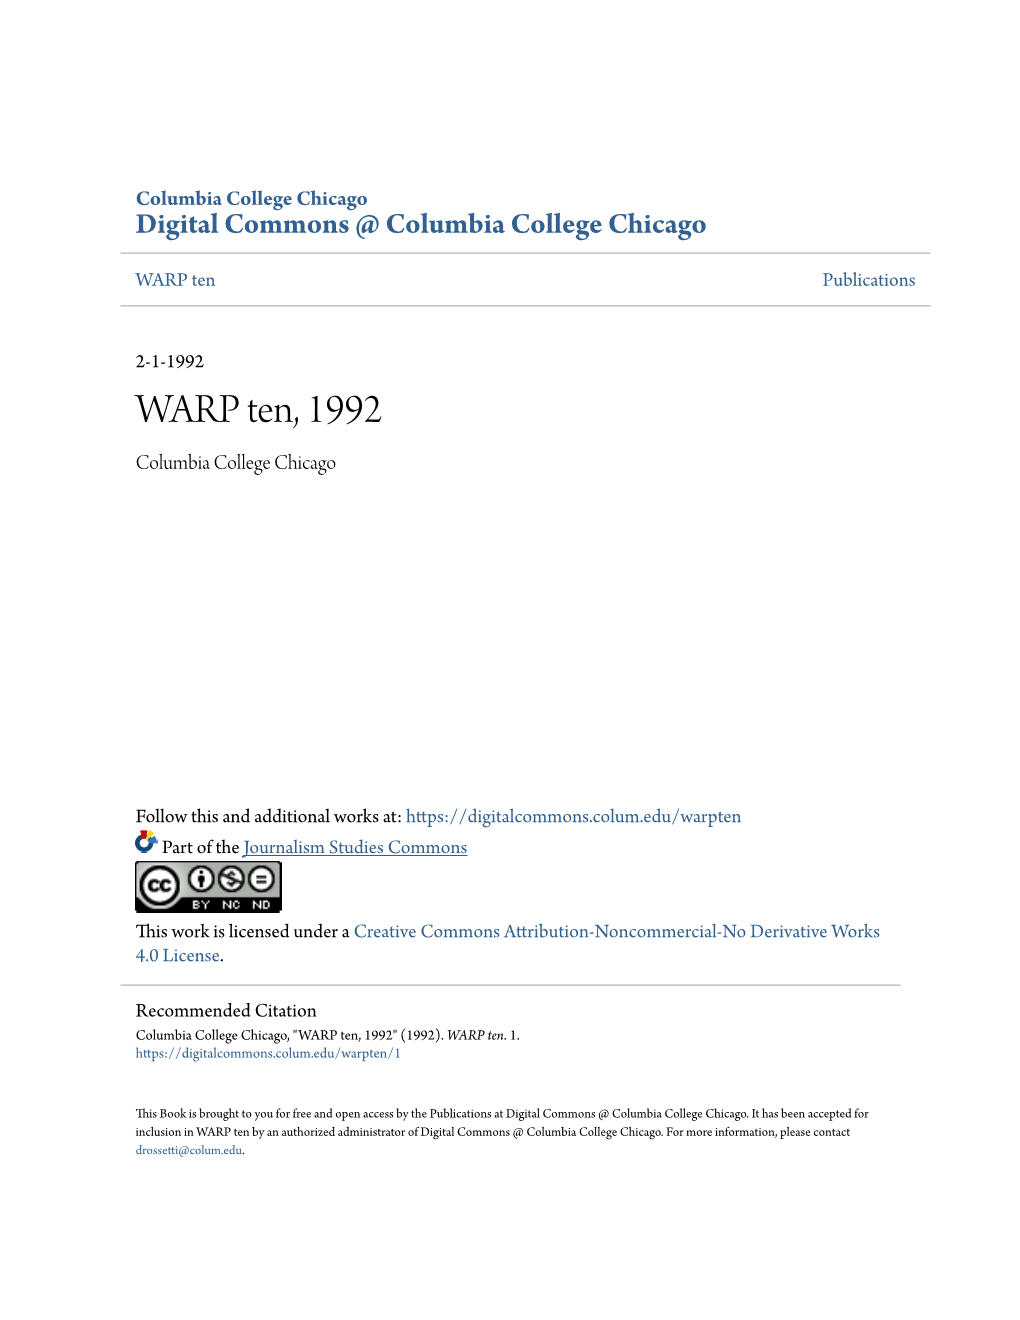 WARP Ten, 1992 Columbia College Chicago